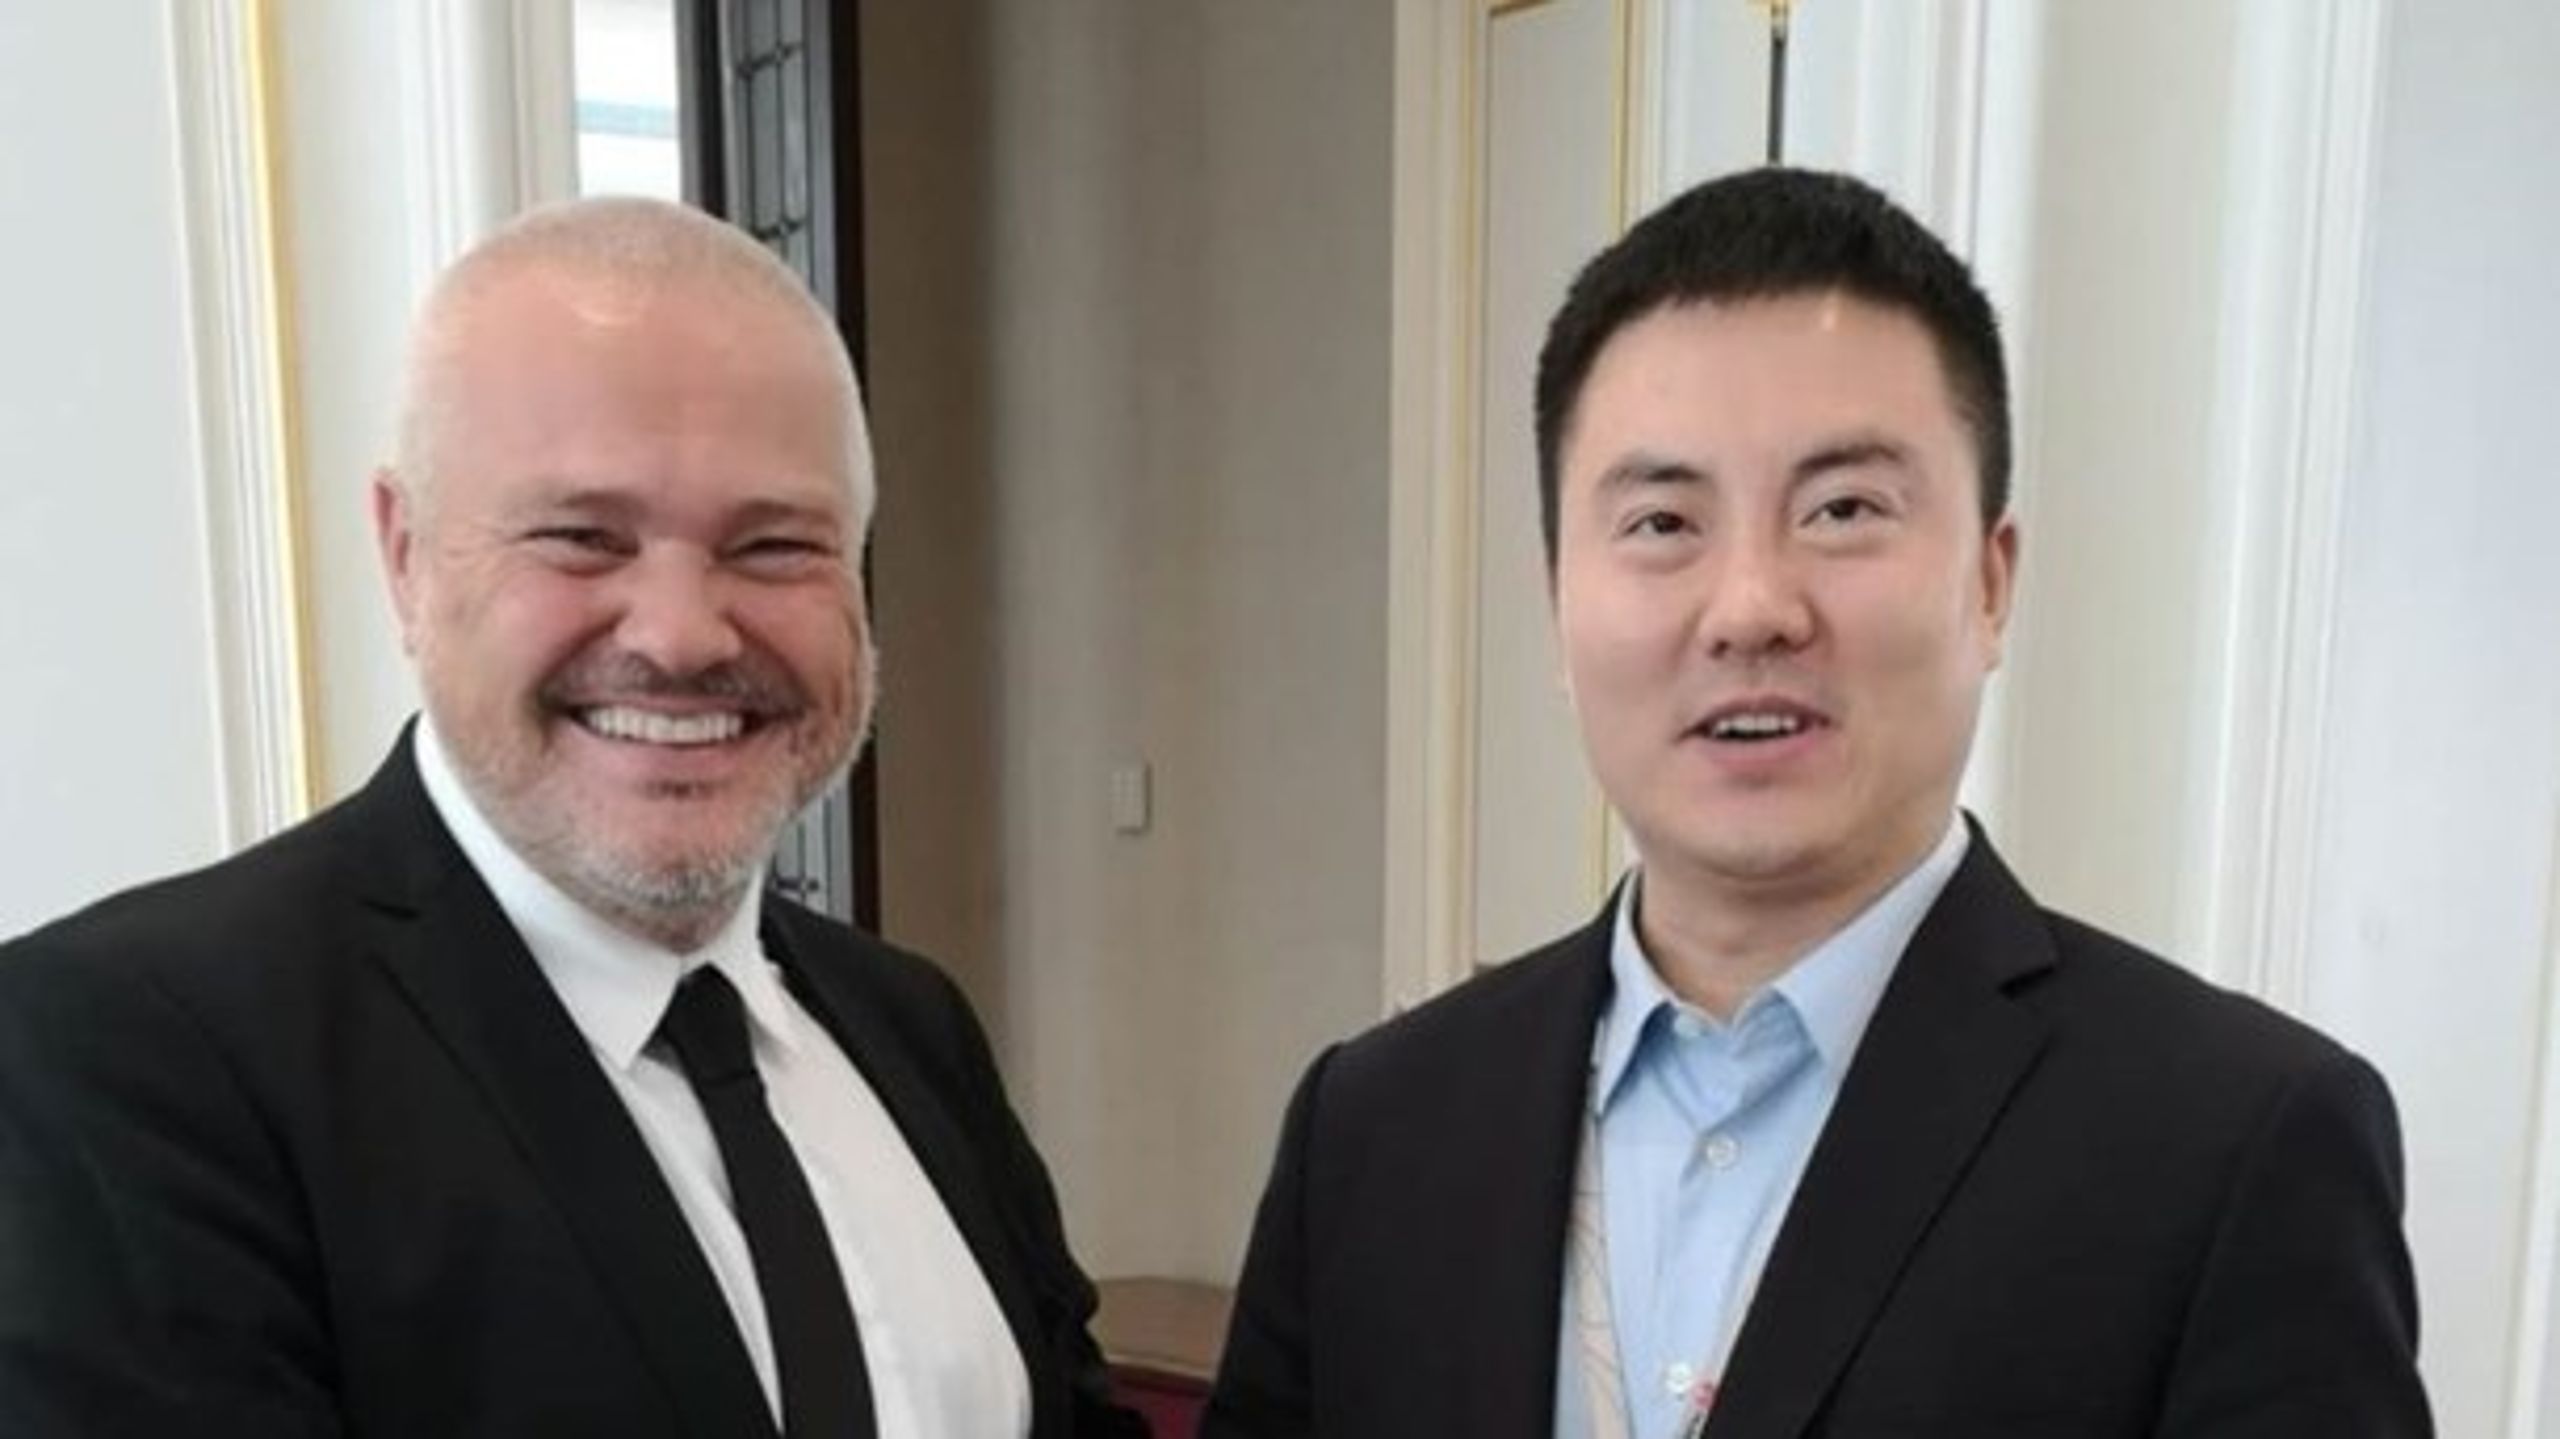 Jan Ziskasen, direktør for Føroya Tele, sammen med Deng Taihua, direktør for Wireless Solutions i Huawei, da selskaberne i oktober 2018 indgik aftale om opstilling af 5G-testudstyret.